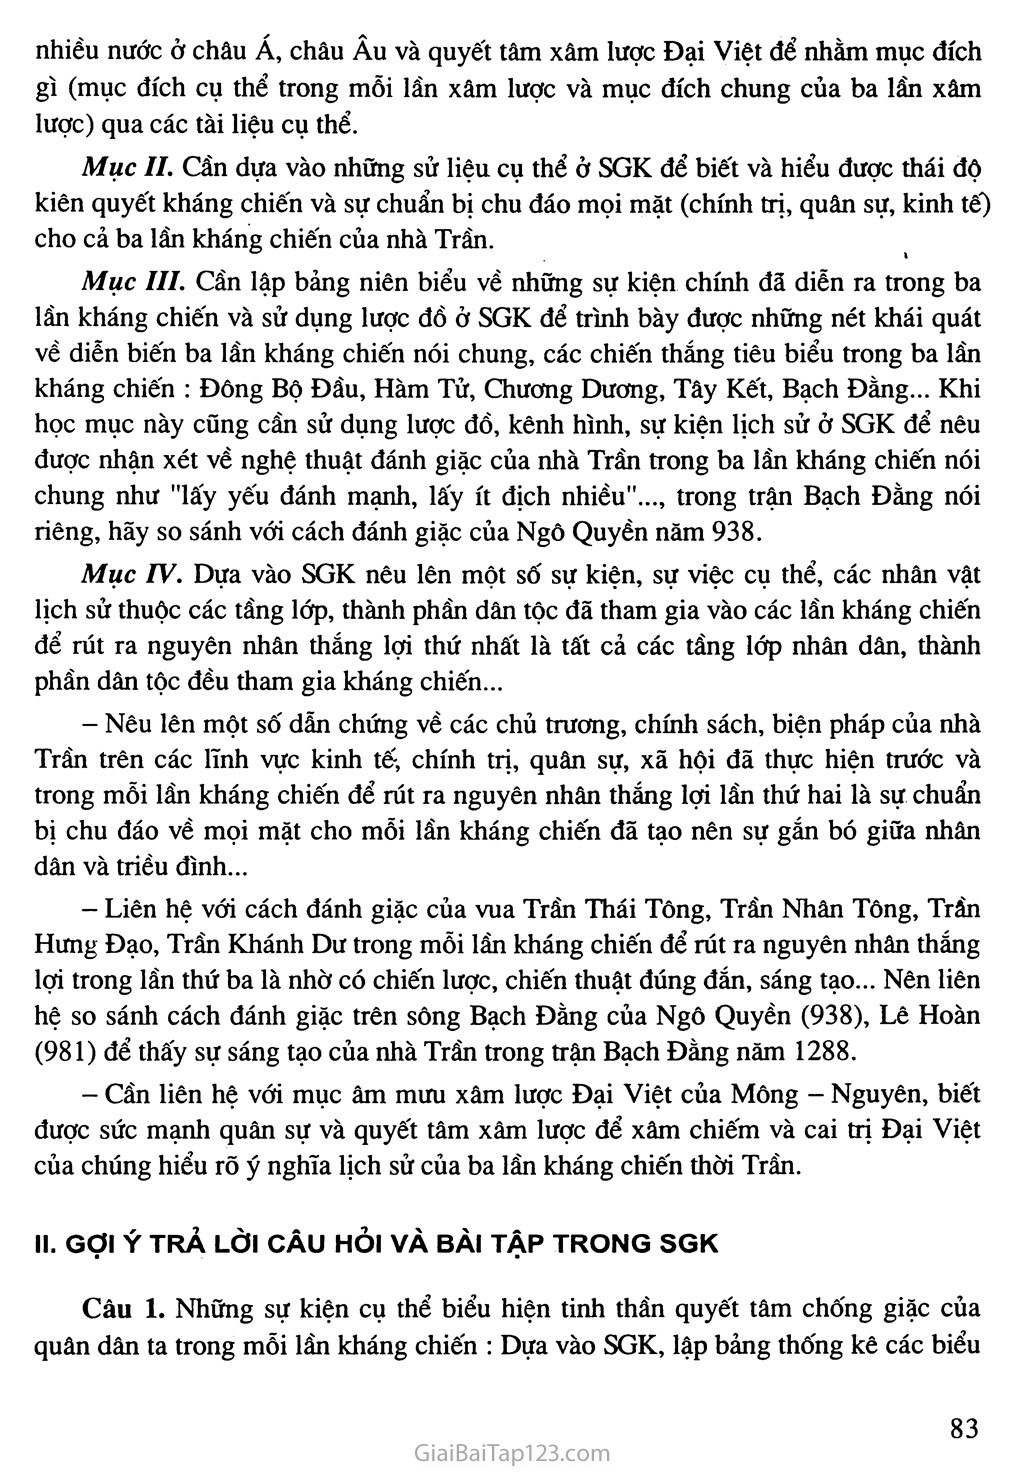 Bài 14: Ba lần kháng chiến chống quân xâm lược Mông - Nguyên (thế kỉ XIII) trang 5